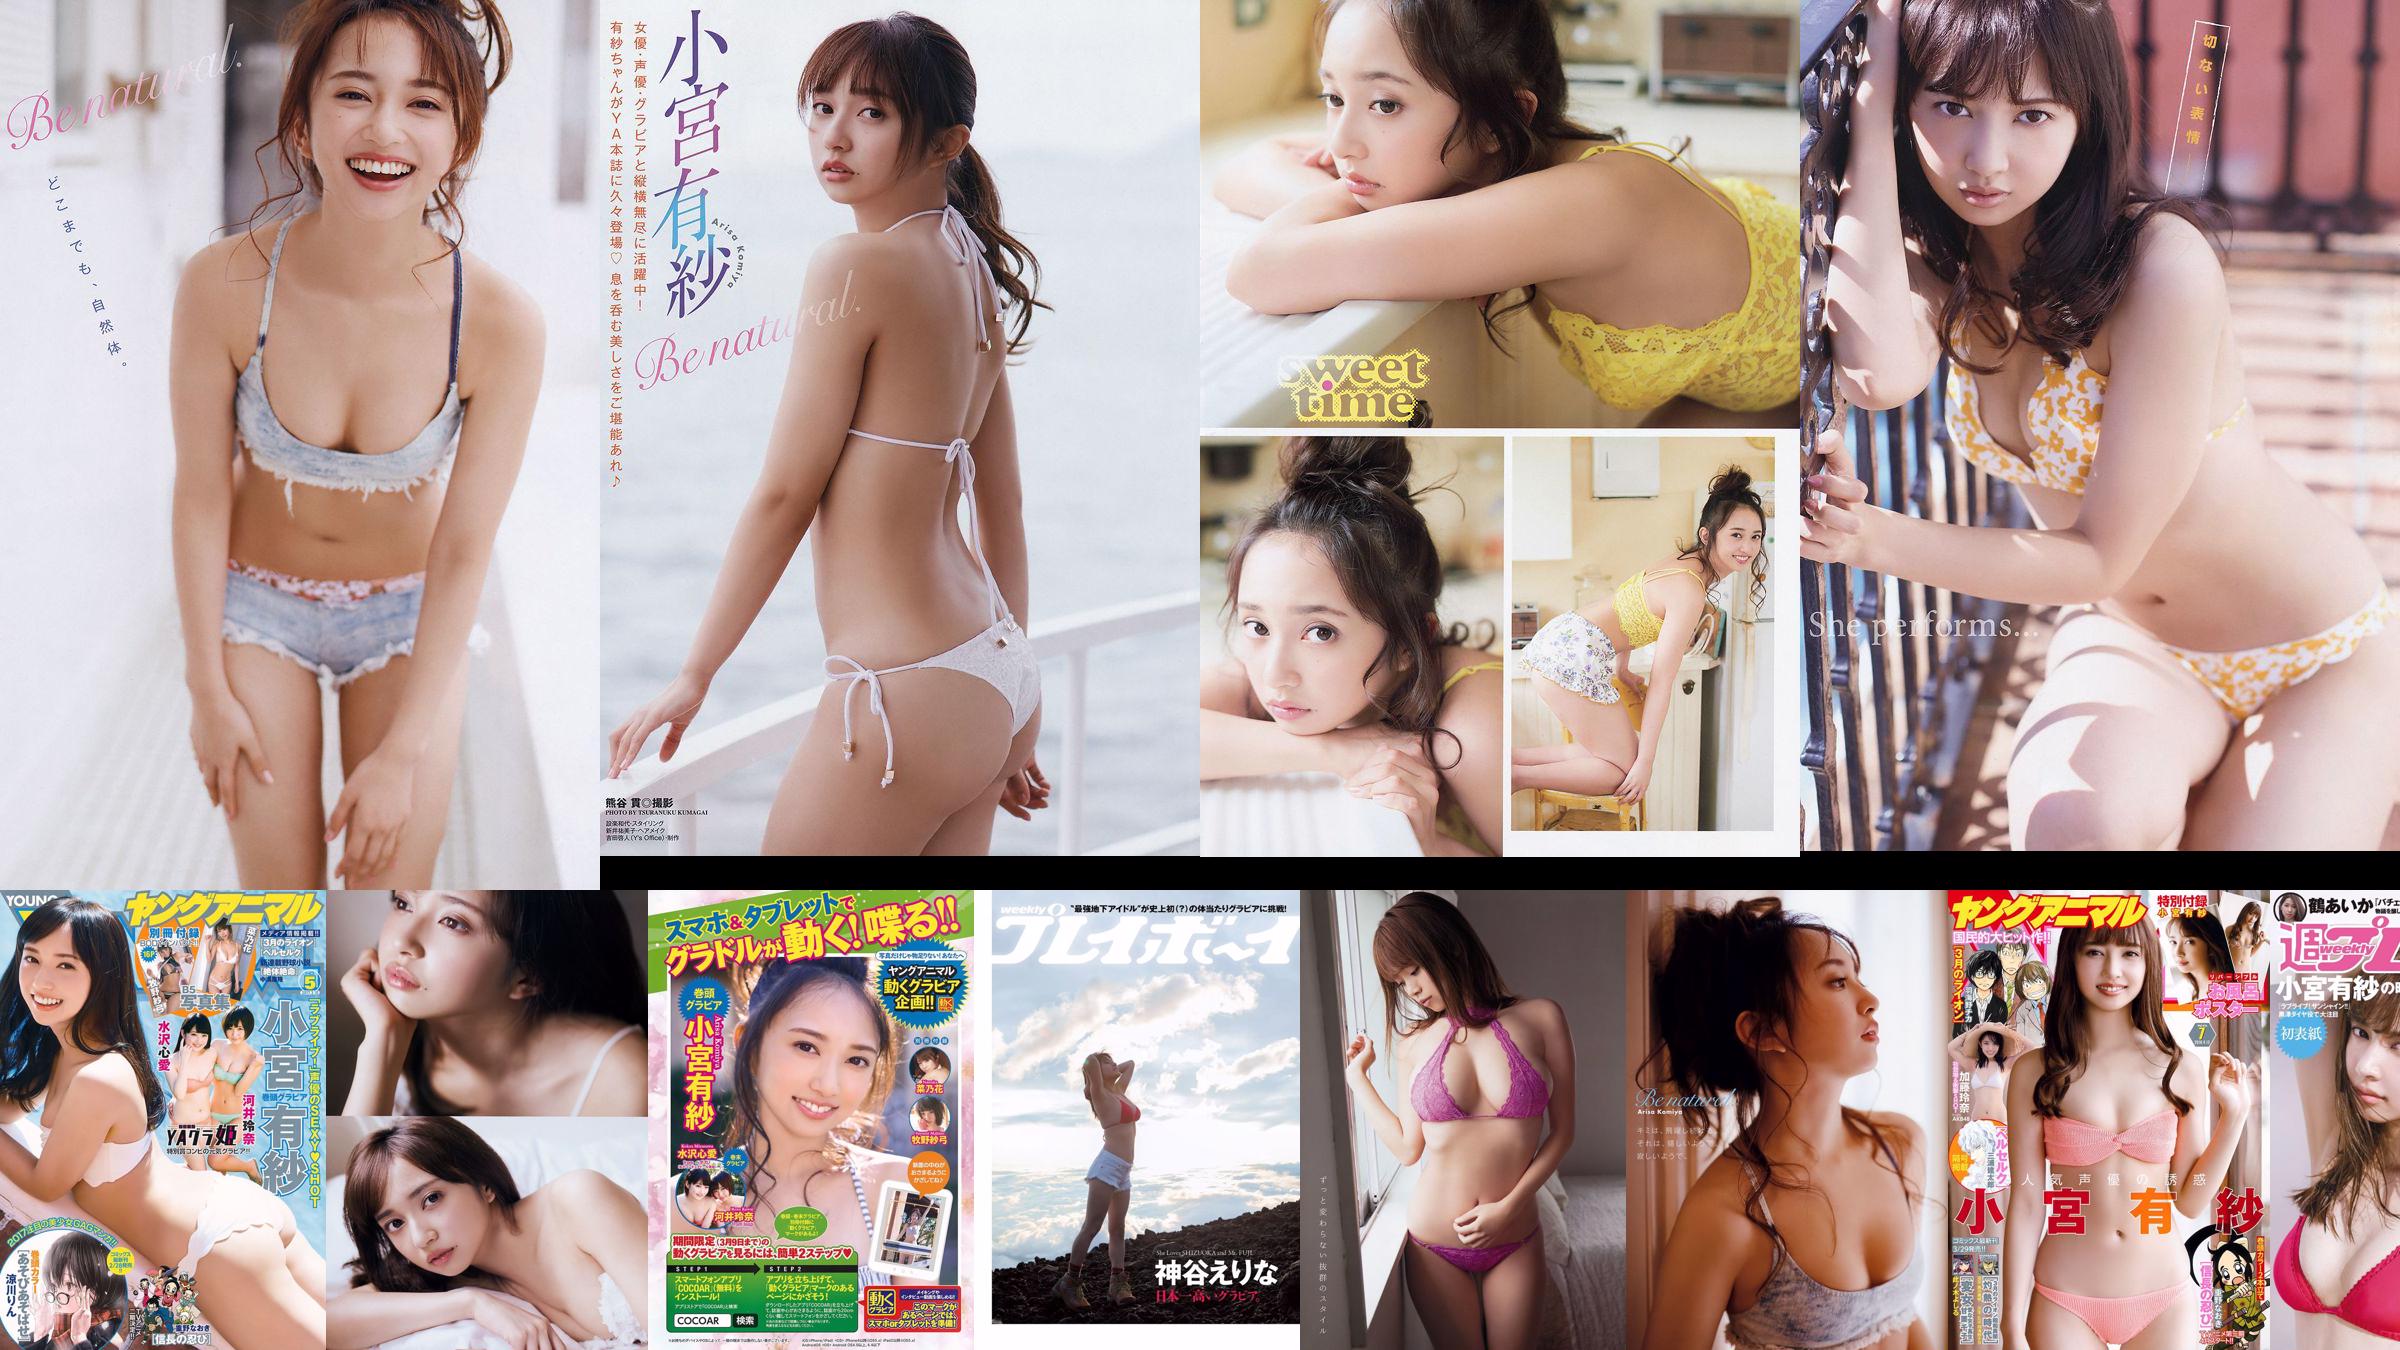 Arisa Komiya Aika Tsuru Sayaka Isoyama Kasumi Arimura Rina Otomo Sei Shiraishi Erina Kamiya [Wekelijkse Playboy] 2017 No.41 foto No.5c462f Pagina 4